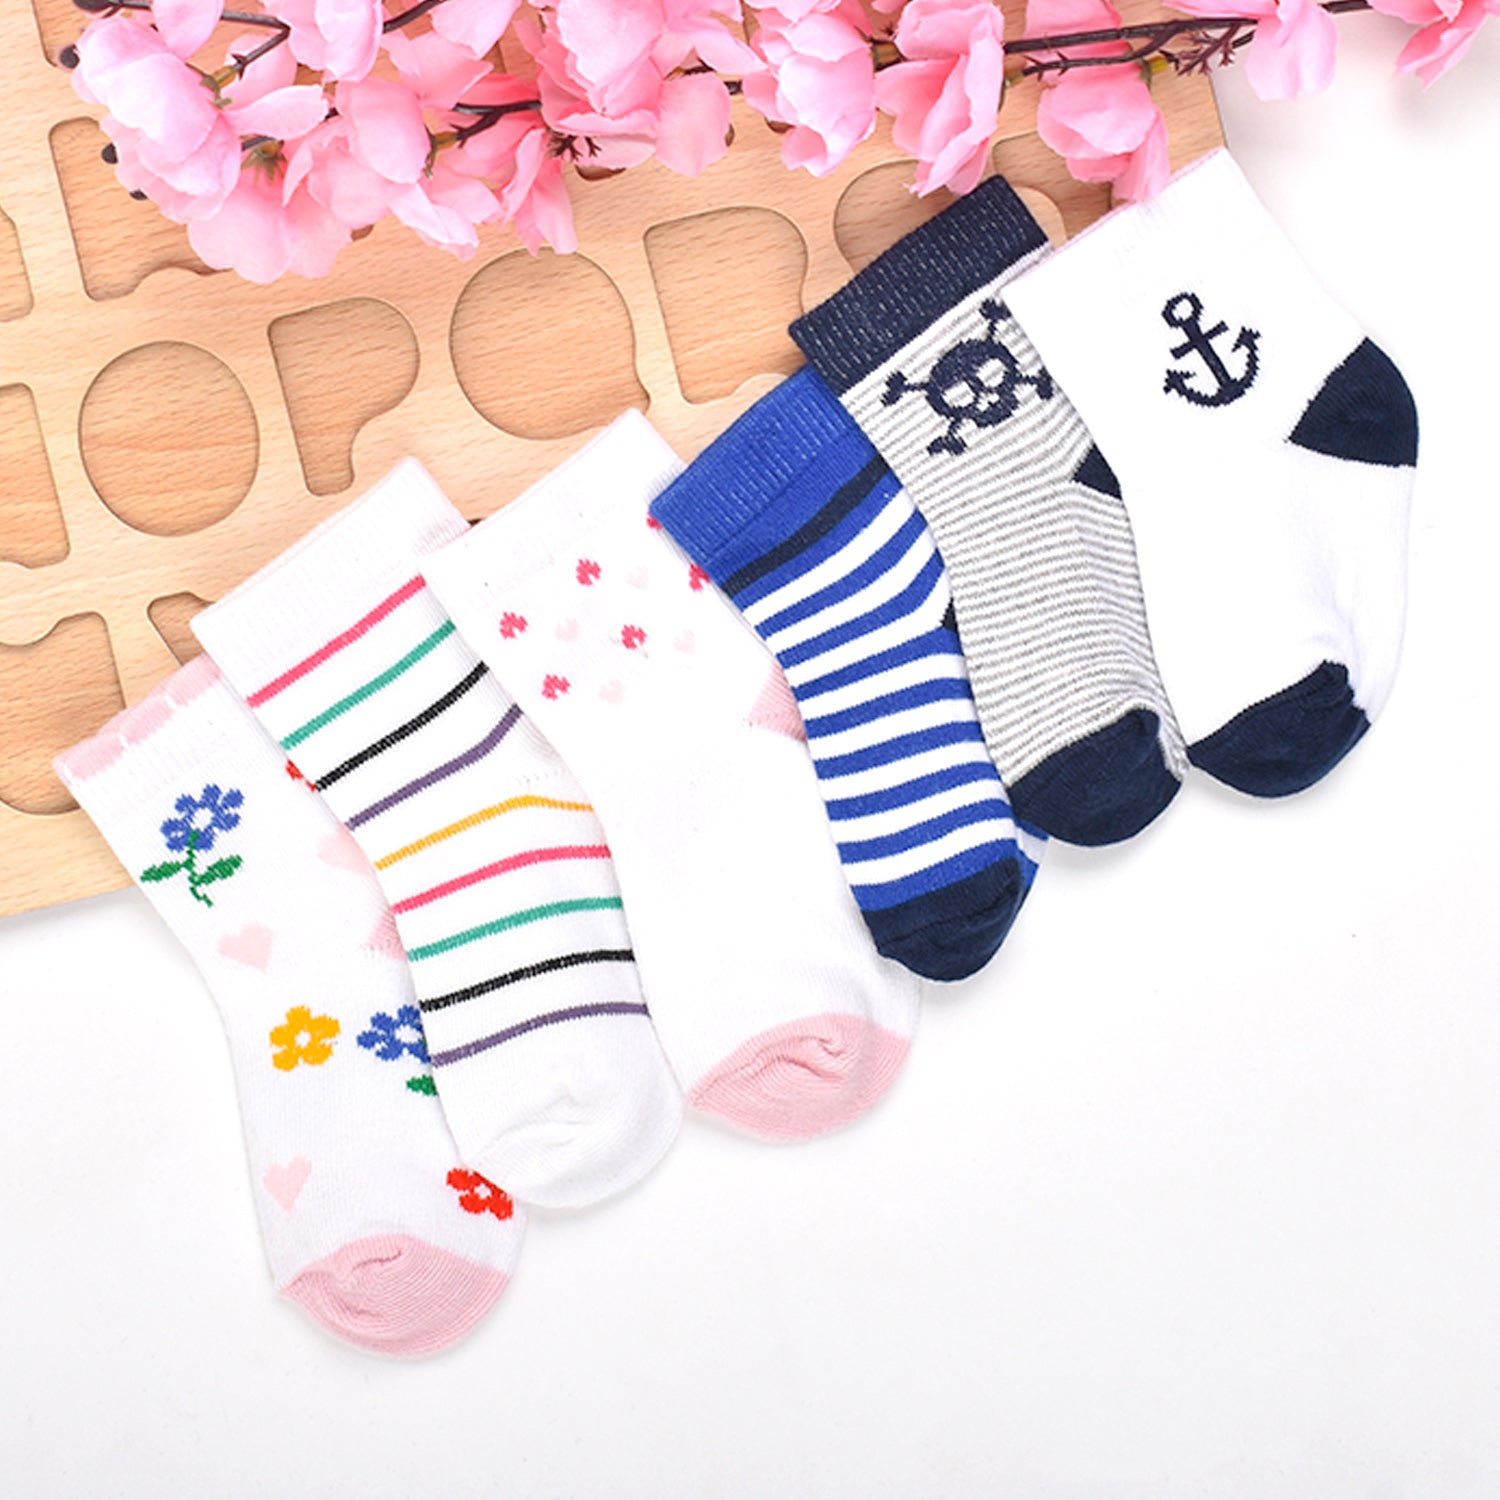 Organic Cotton Kids Socks -Buy 3 Get 3 Free- Mix Design